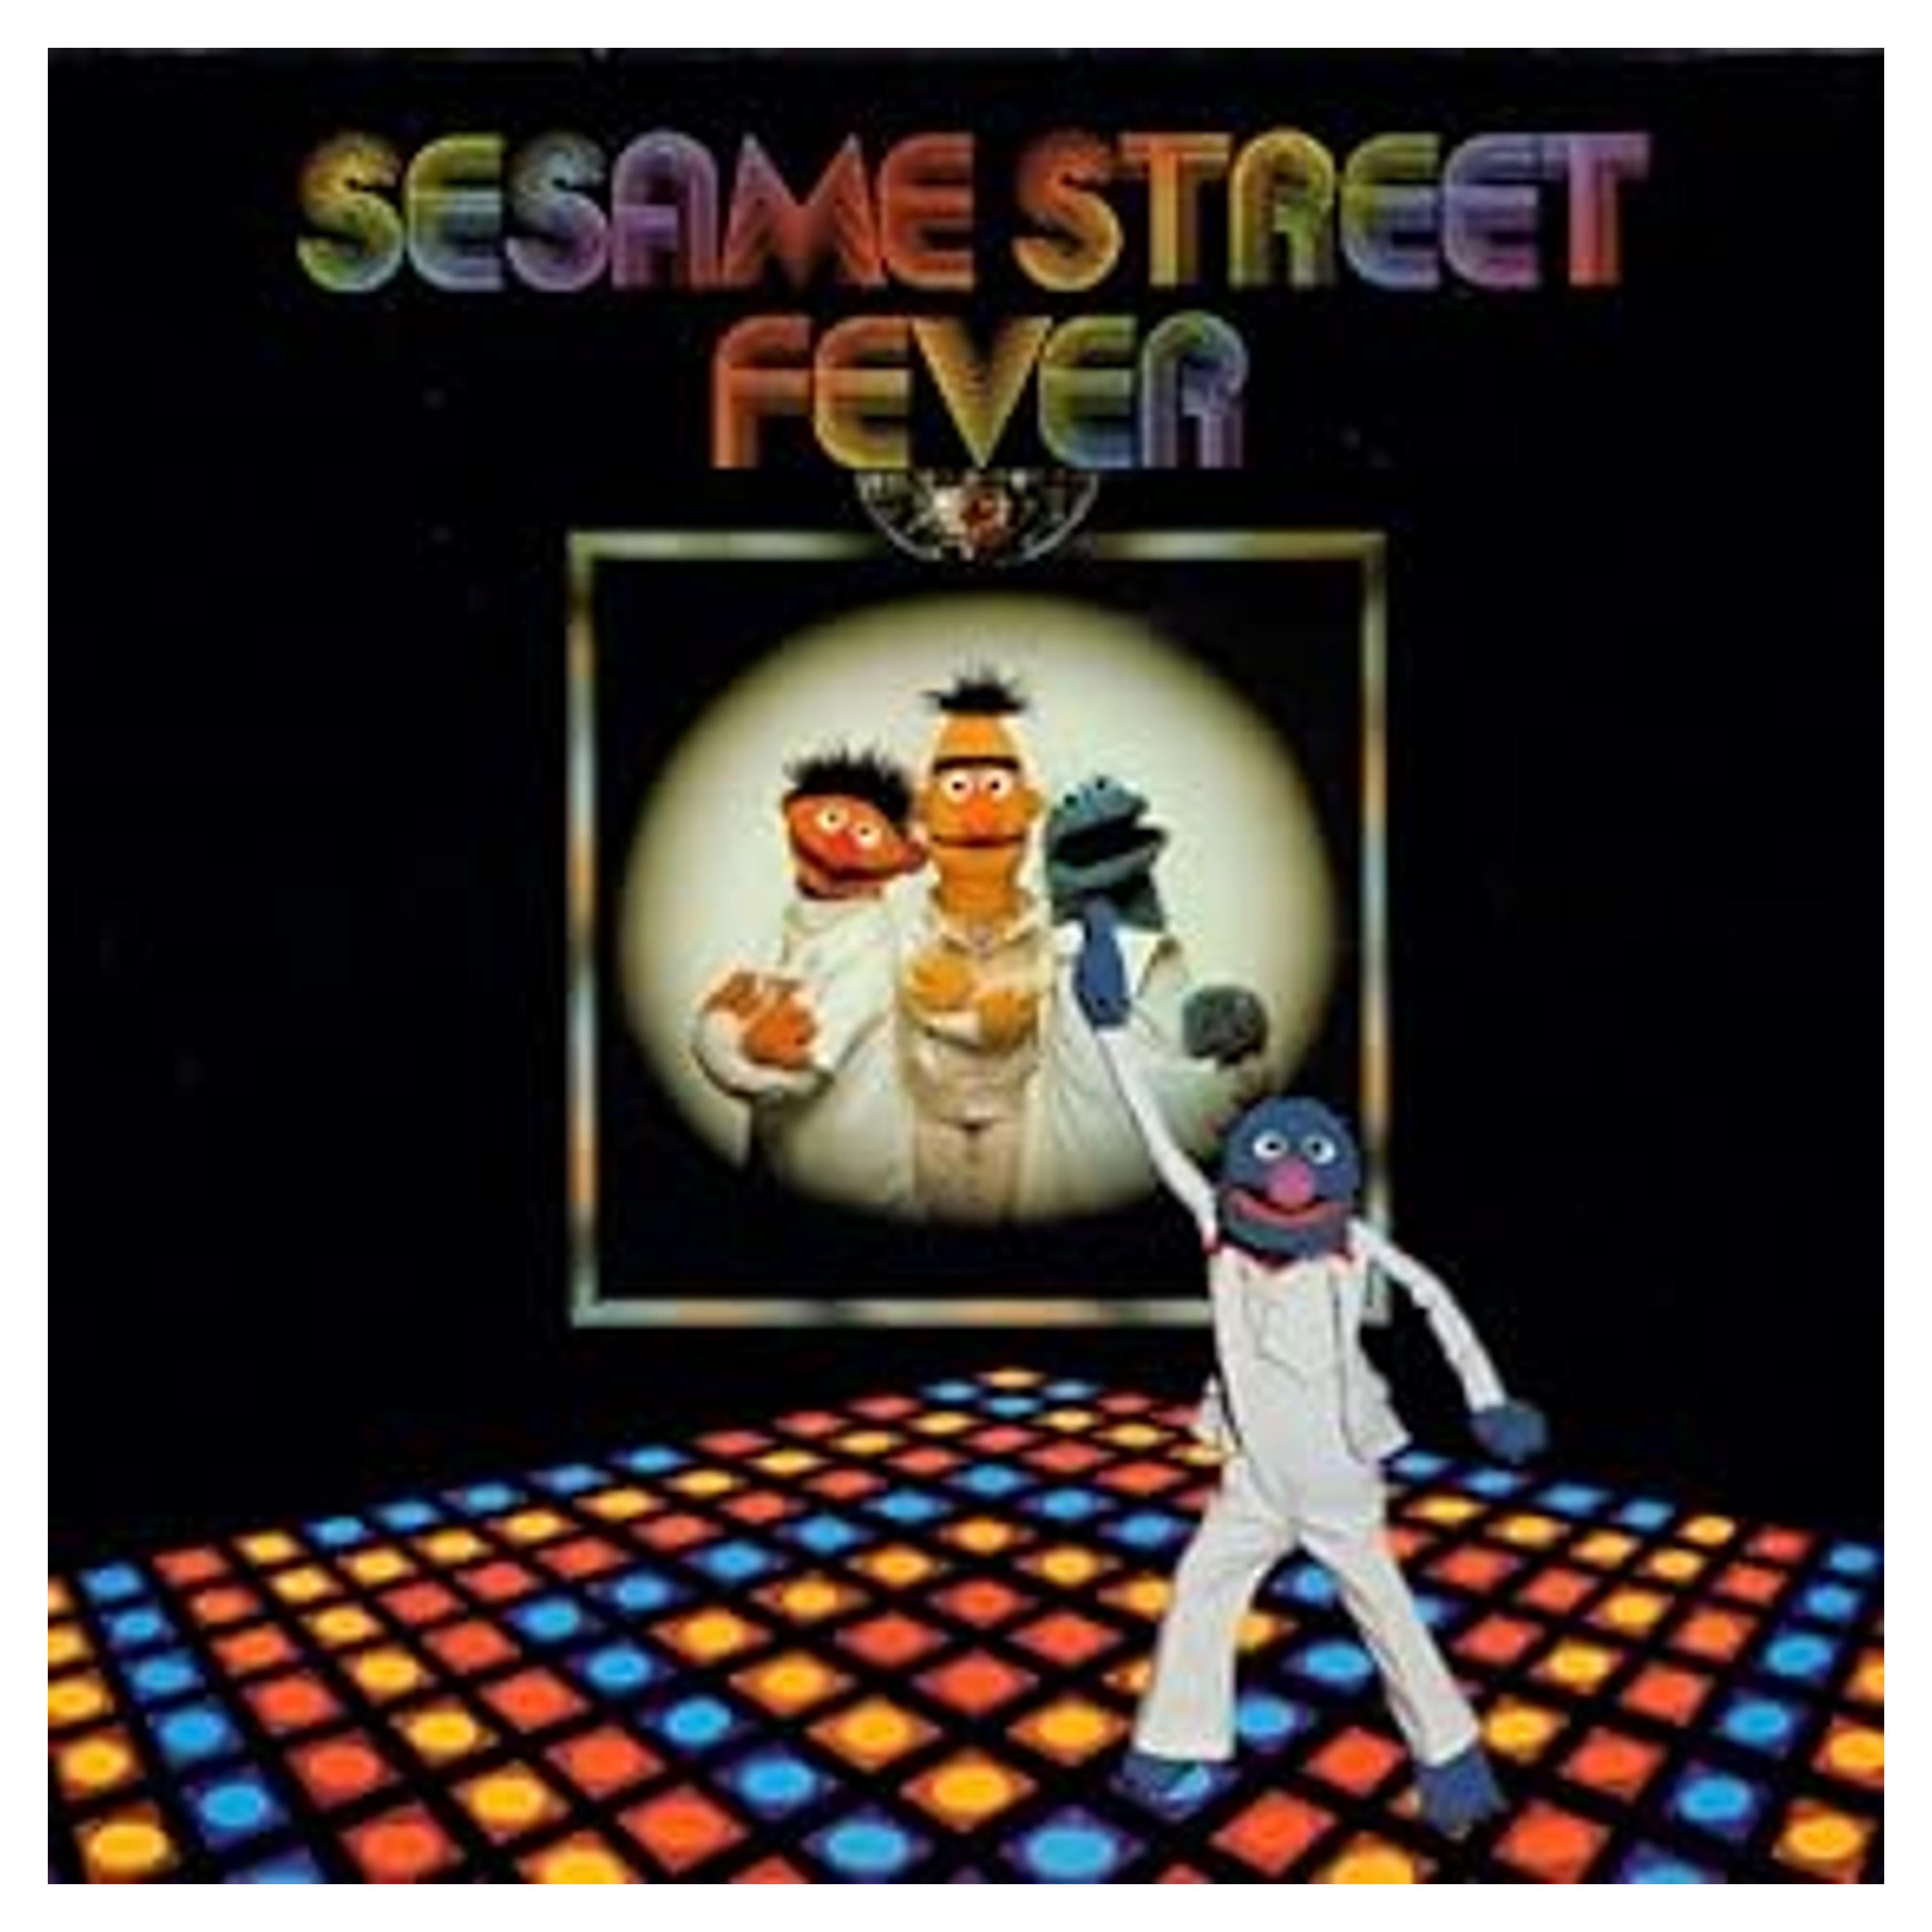 Sesame Street: Sesame Street Fever